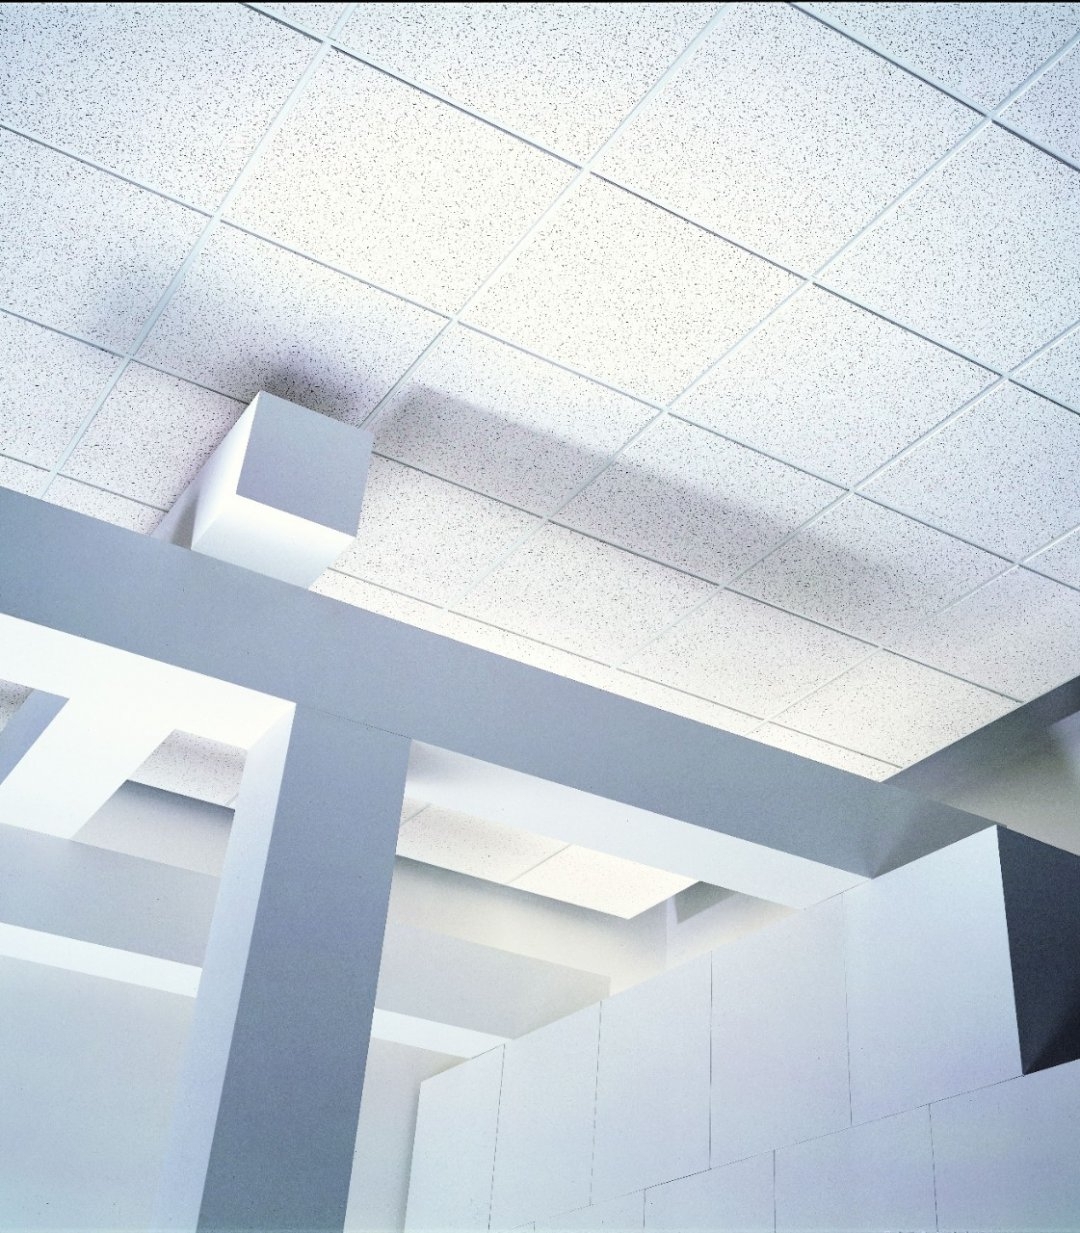 Usg Staple Up Ceiling Tilesusg staple up ceiling tiles ceiling tiles